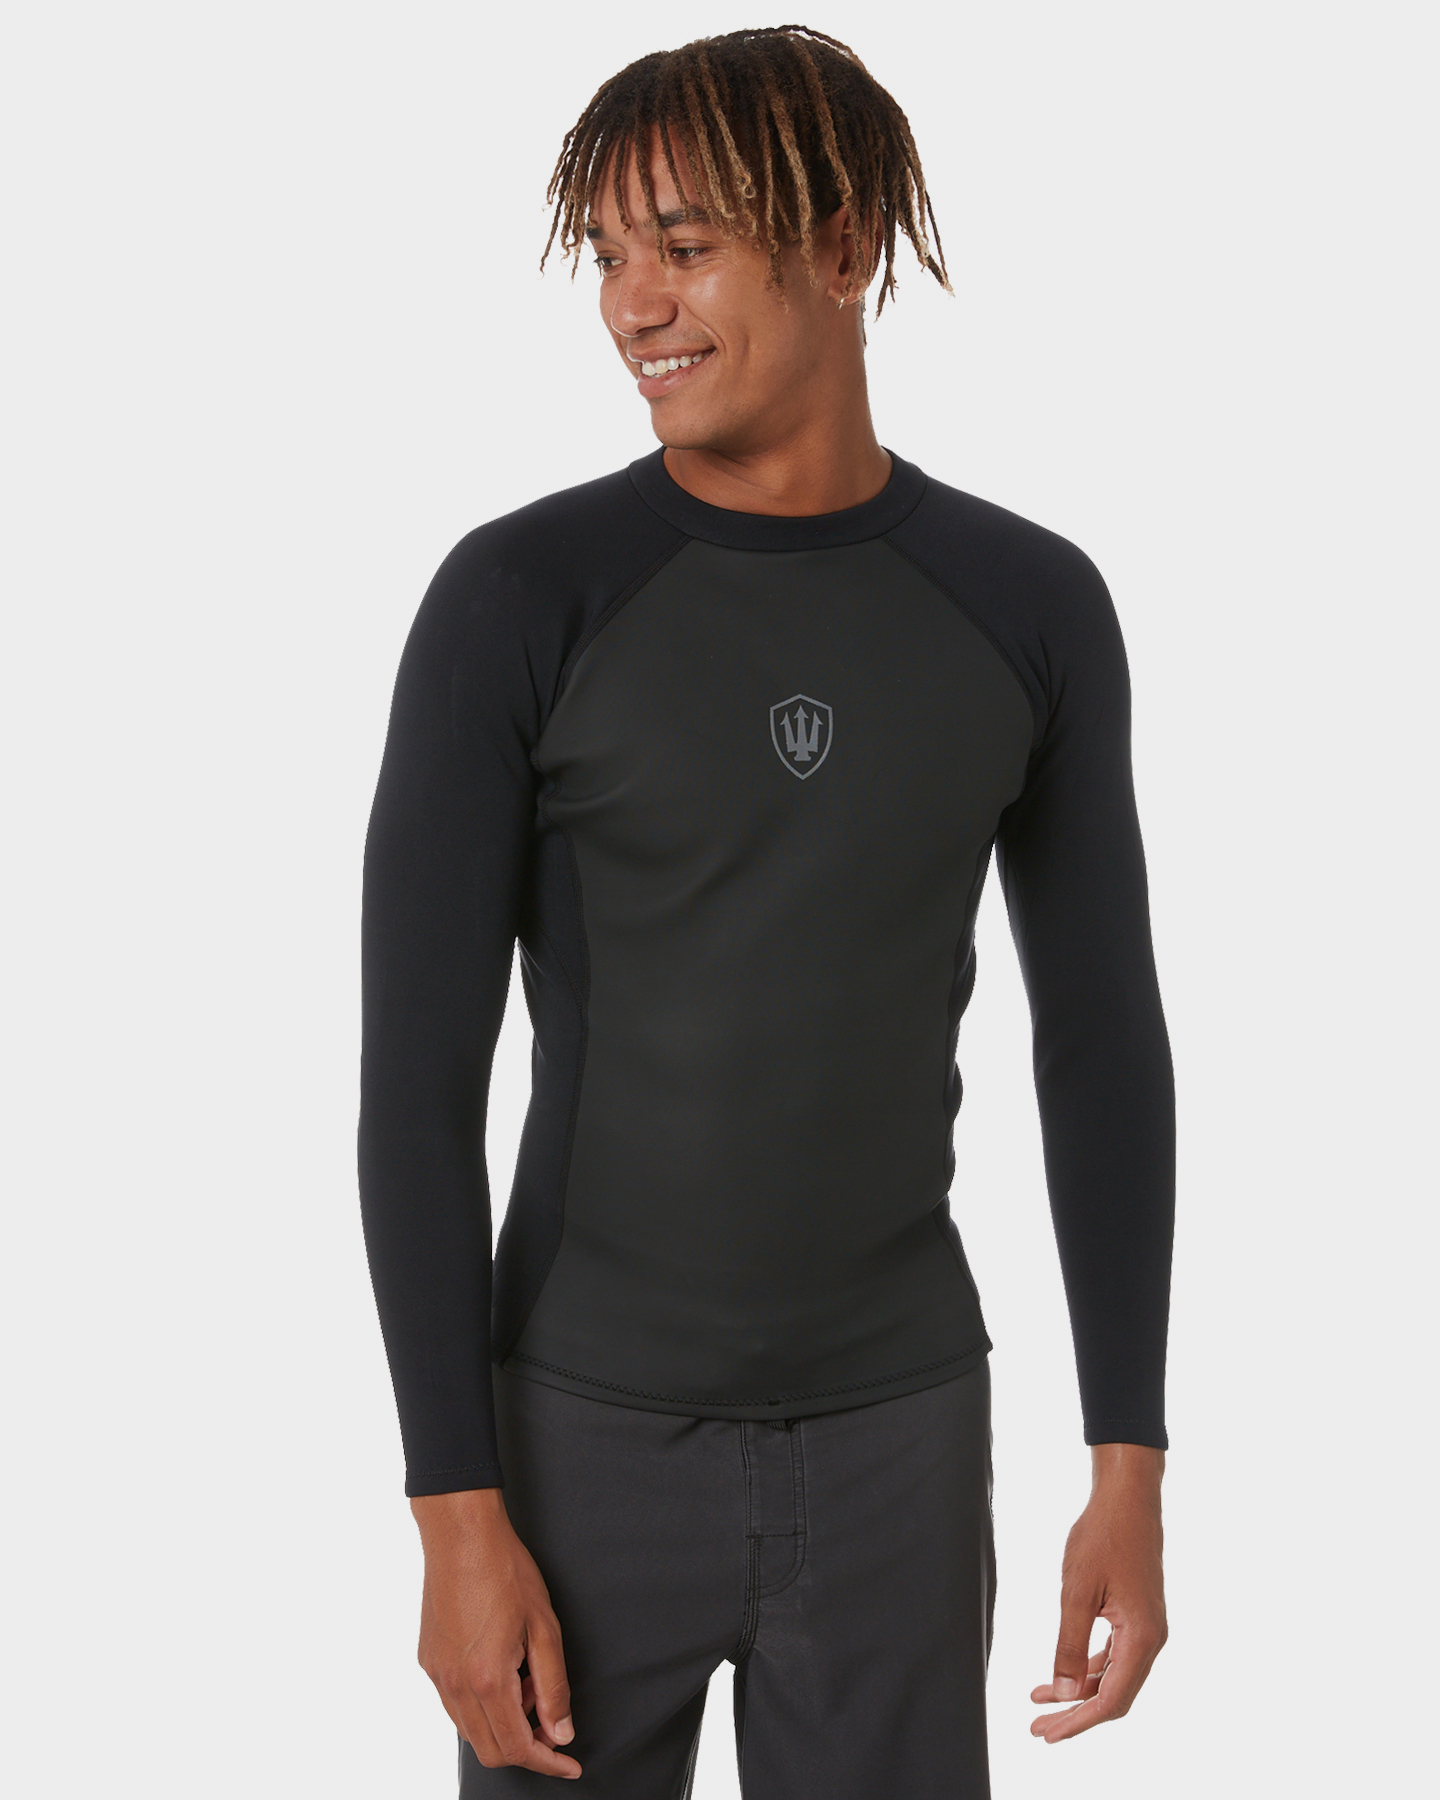 Fk Surf Zip Ls Jacket - All Black | SurfStitch